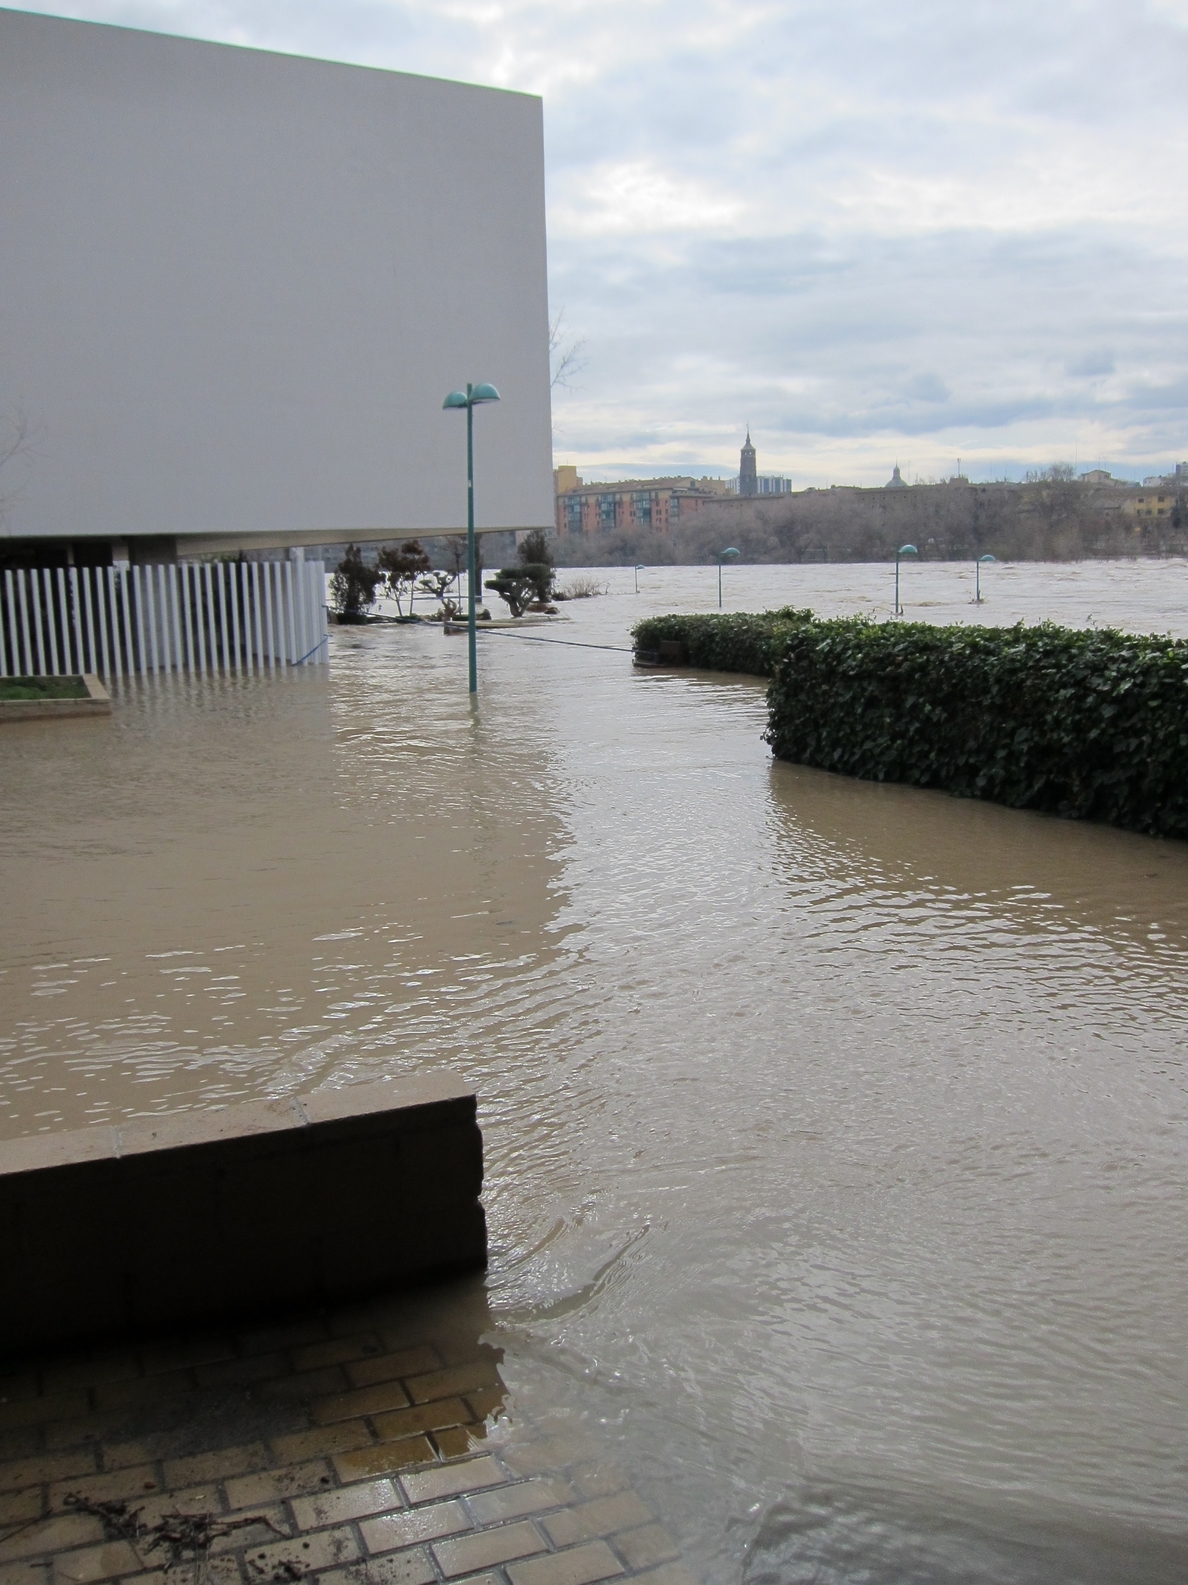 El Gobierno central destina 7,2 millones para reparar daños causados por el temporal en la cuenca del Ebro